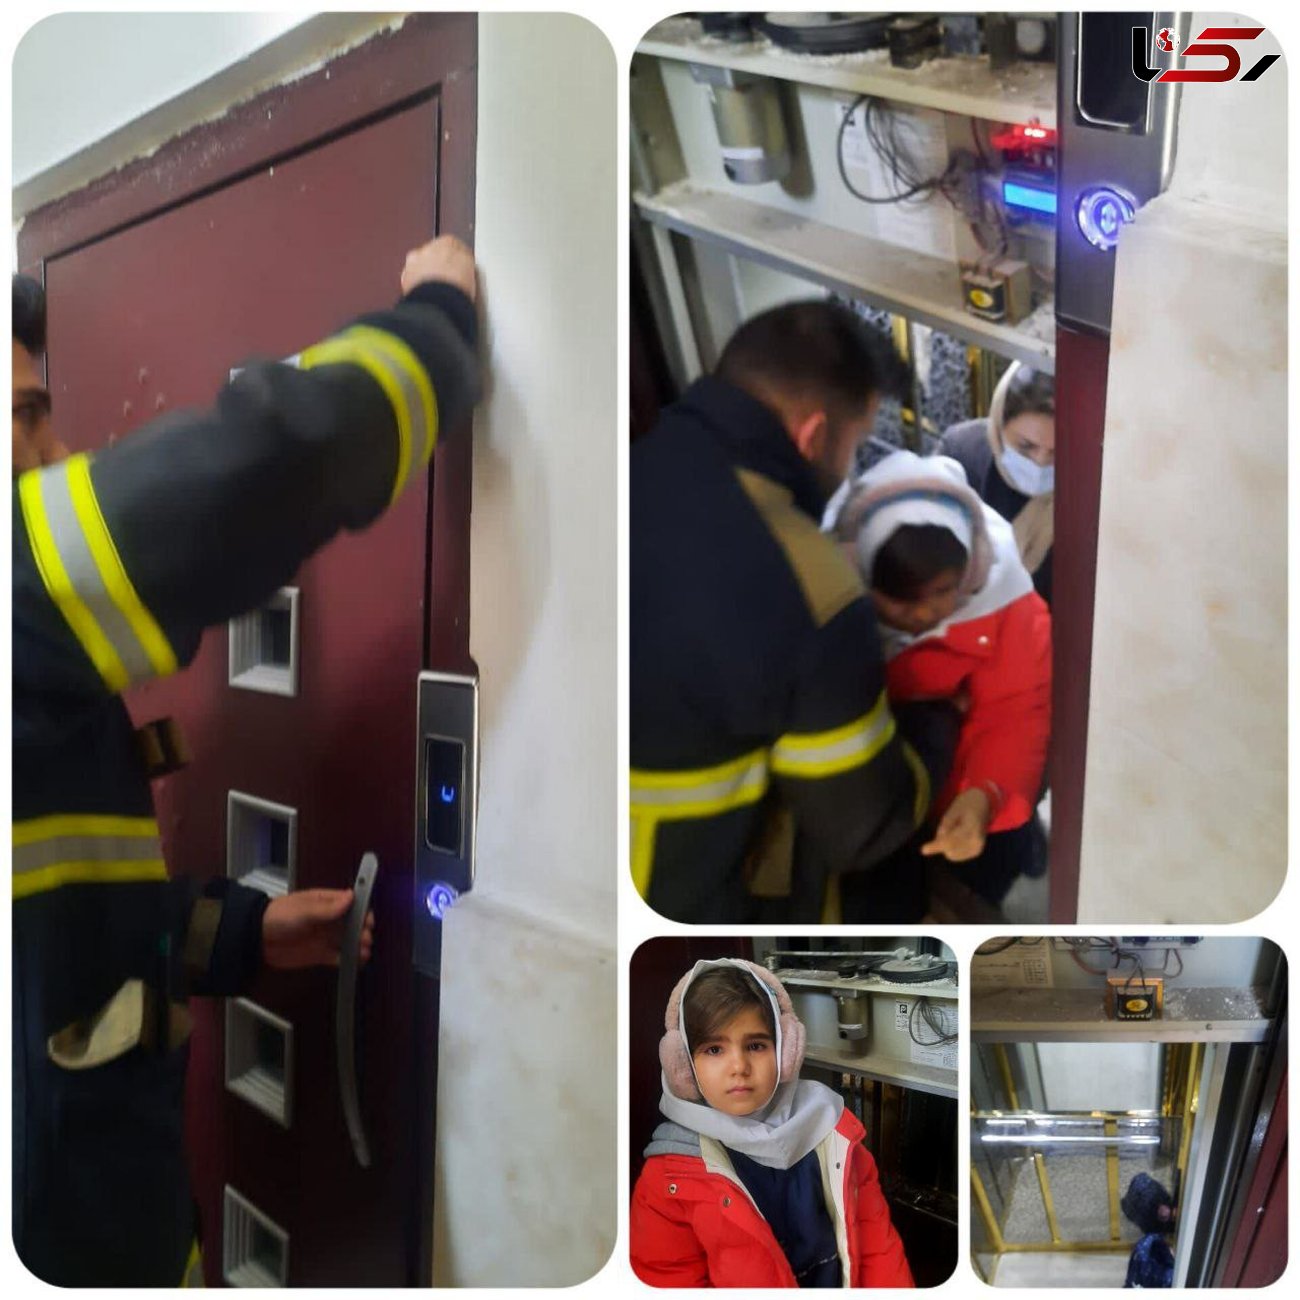 نجات مادر و دختر گرفتار در آسانسور ساختمان + عکس و جزییات